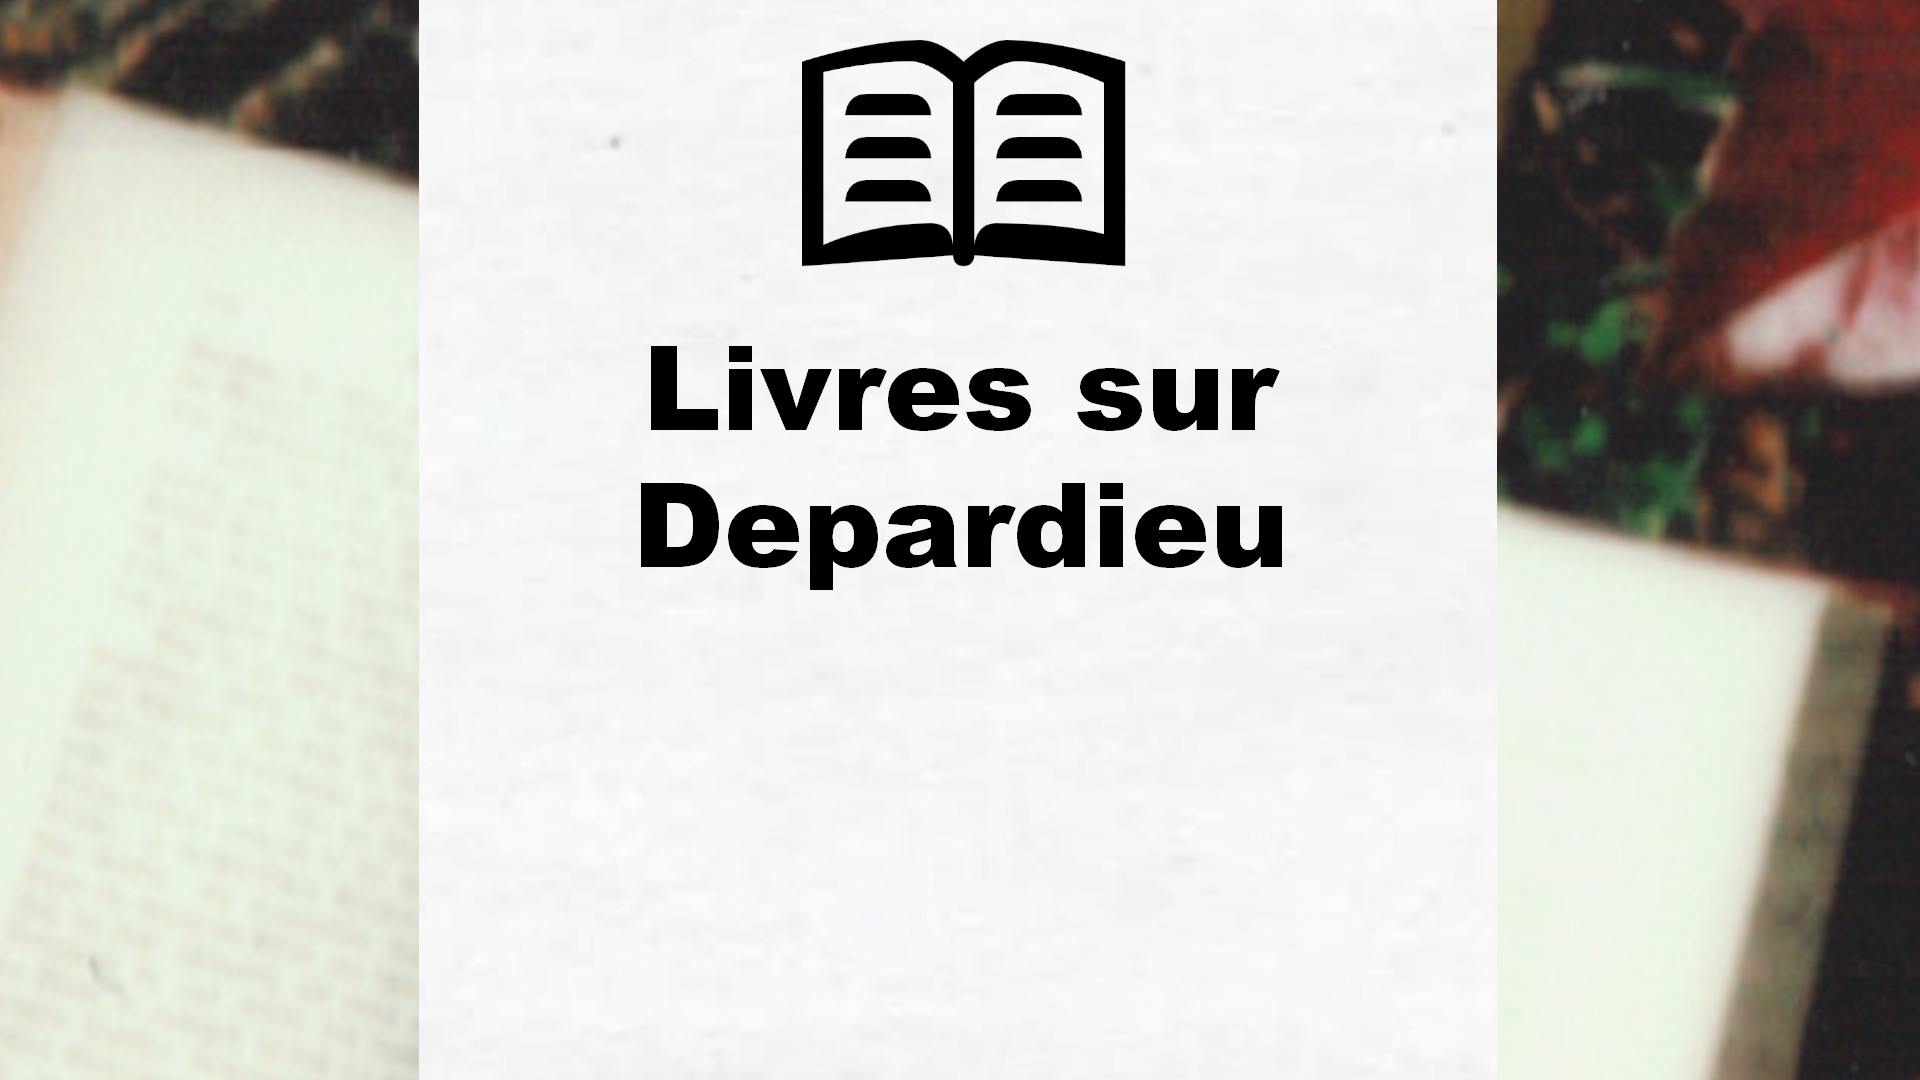 Livres sur Depardieu